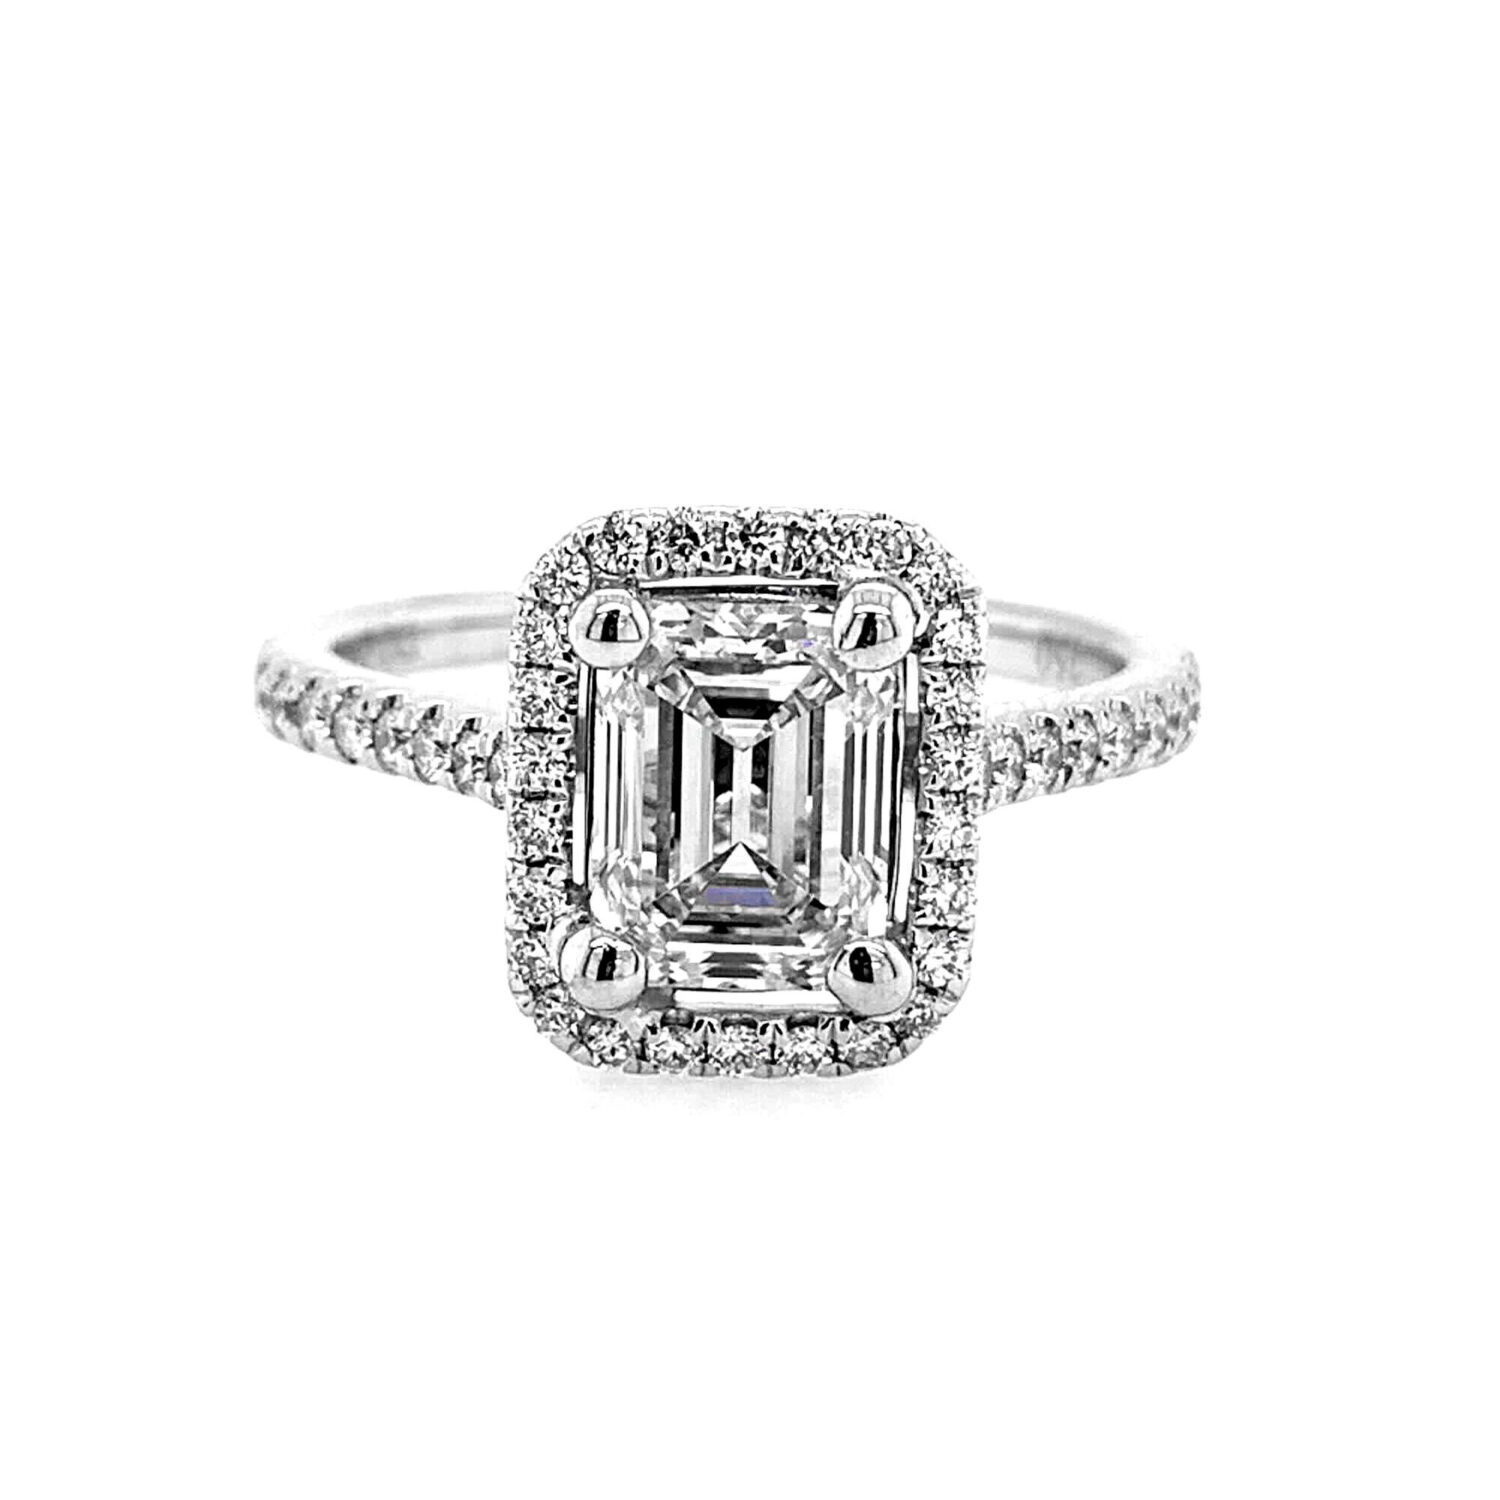 1.57 Emerald Cut Diamond Engagement Ring Set In 18 Karat White 